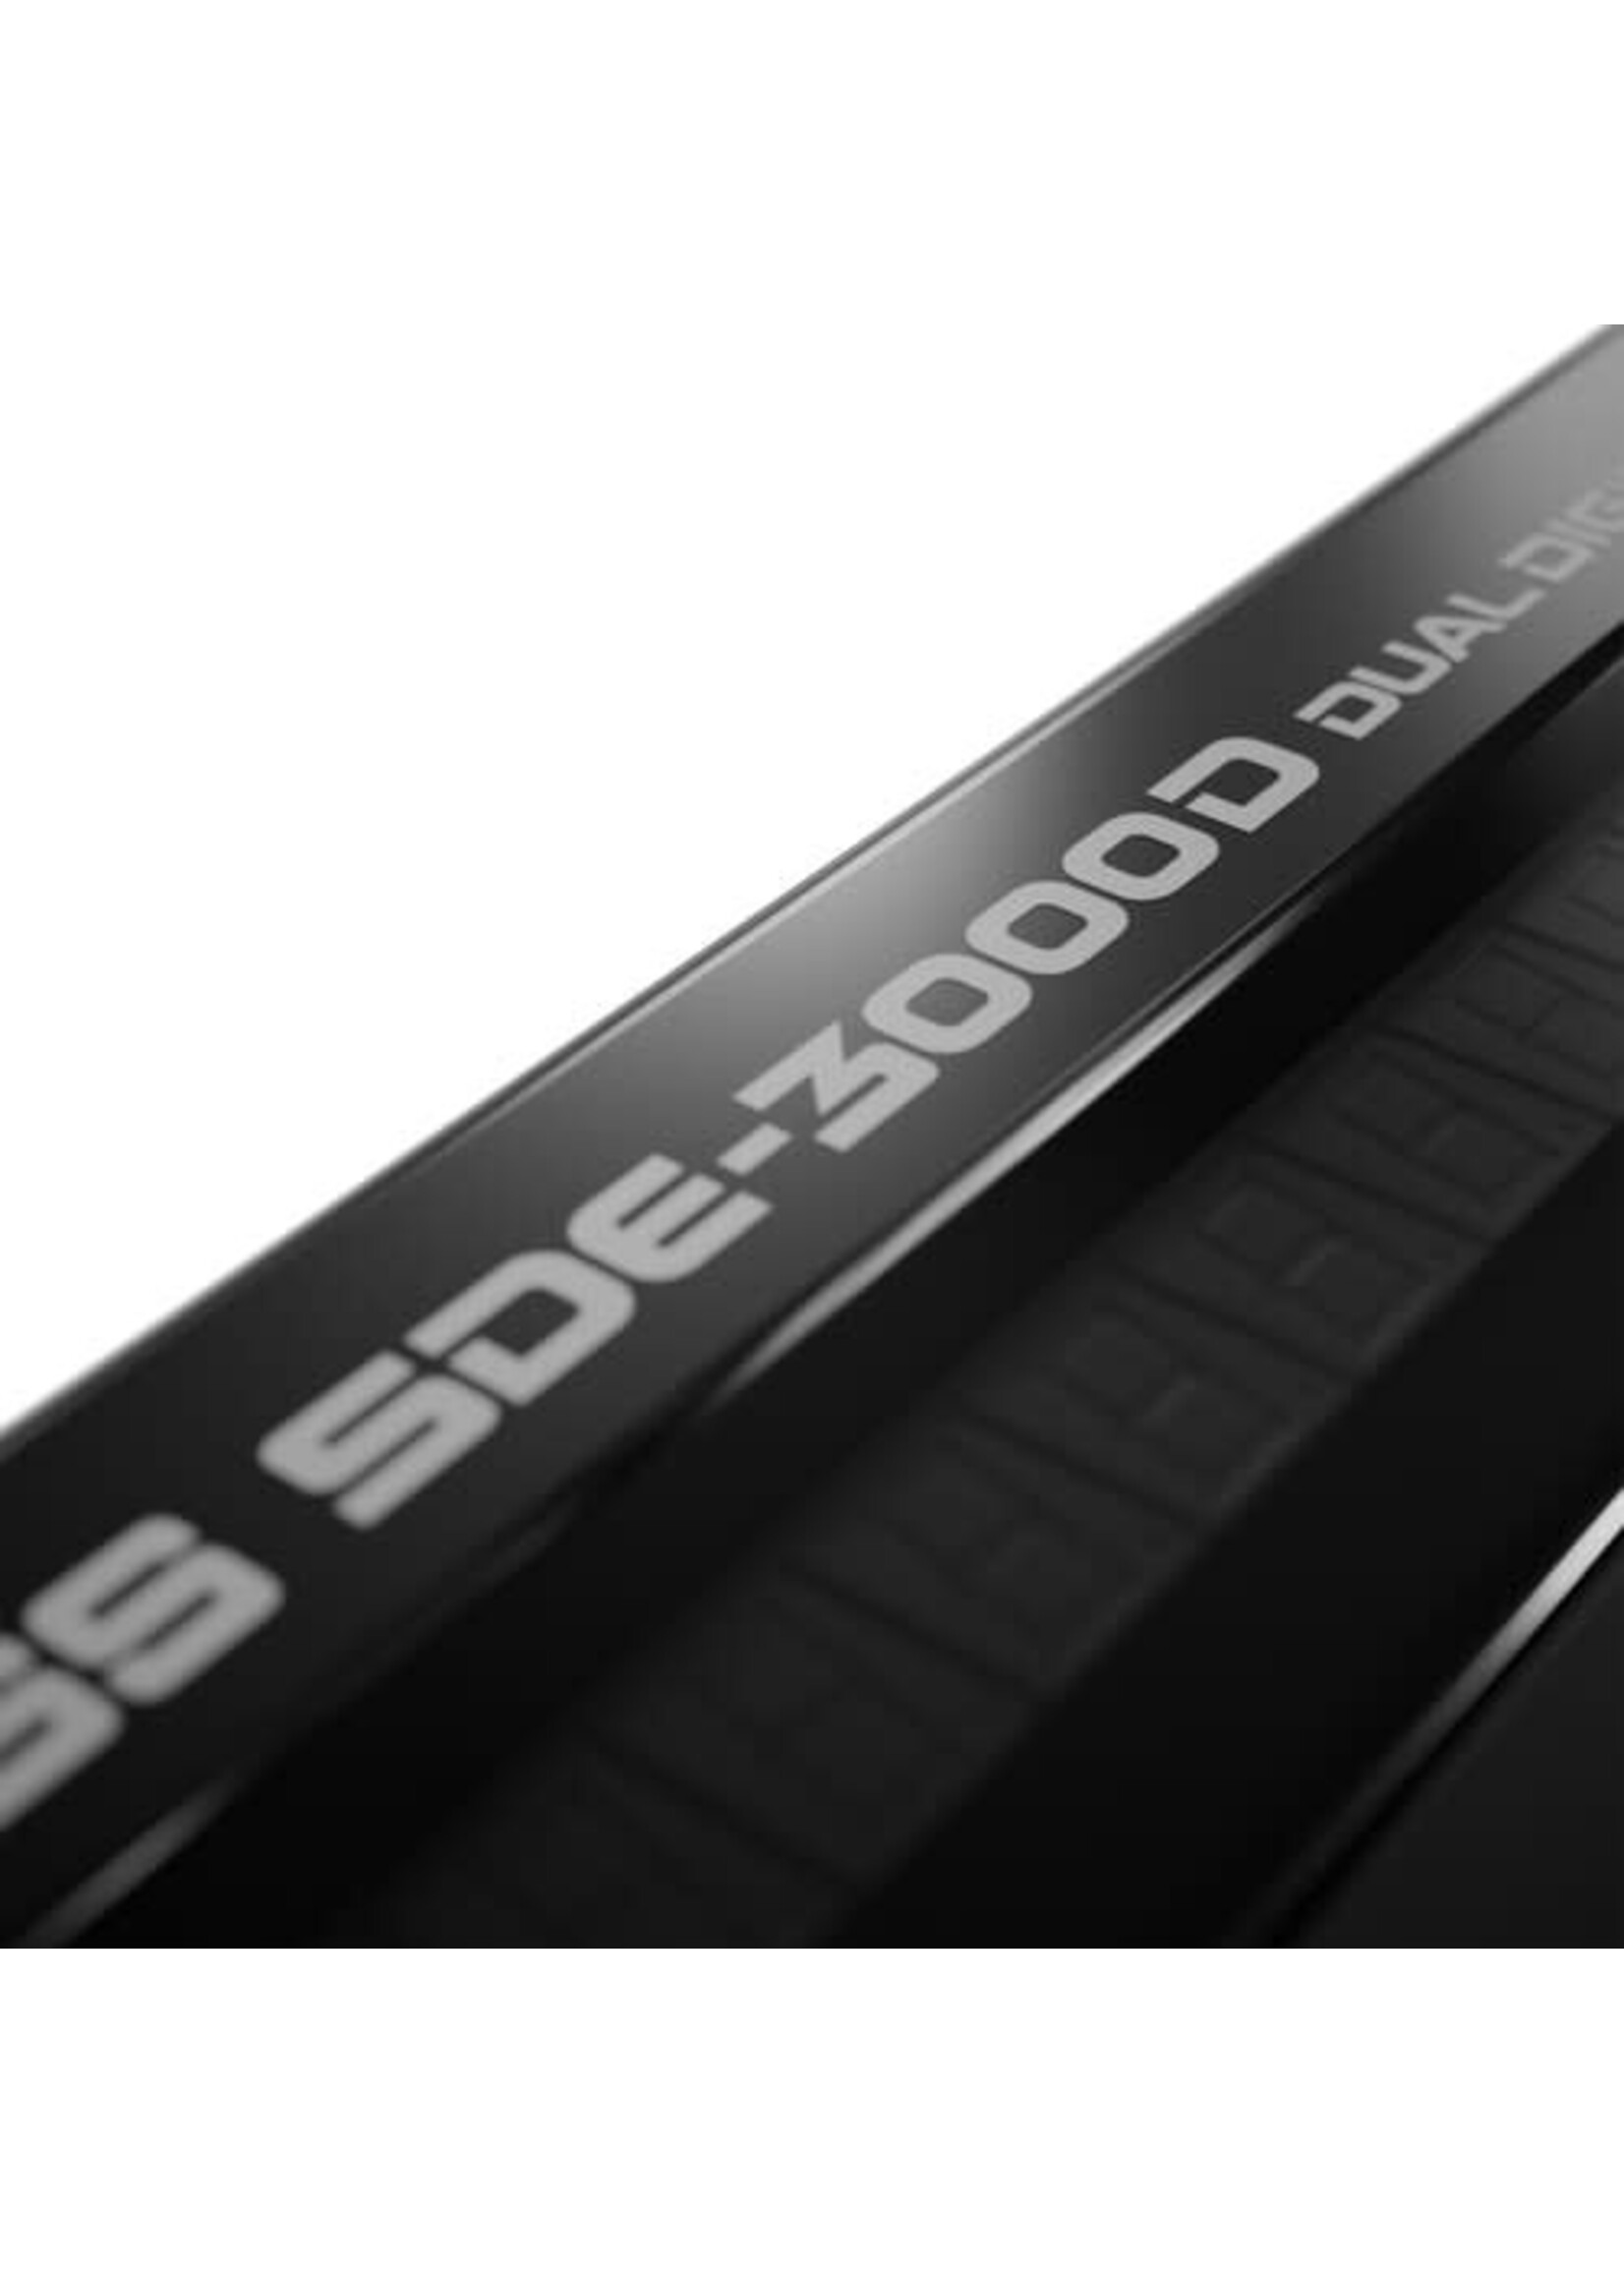 Boss BOSS SDE-3000D Dual Digital Delay